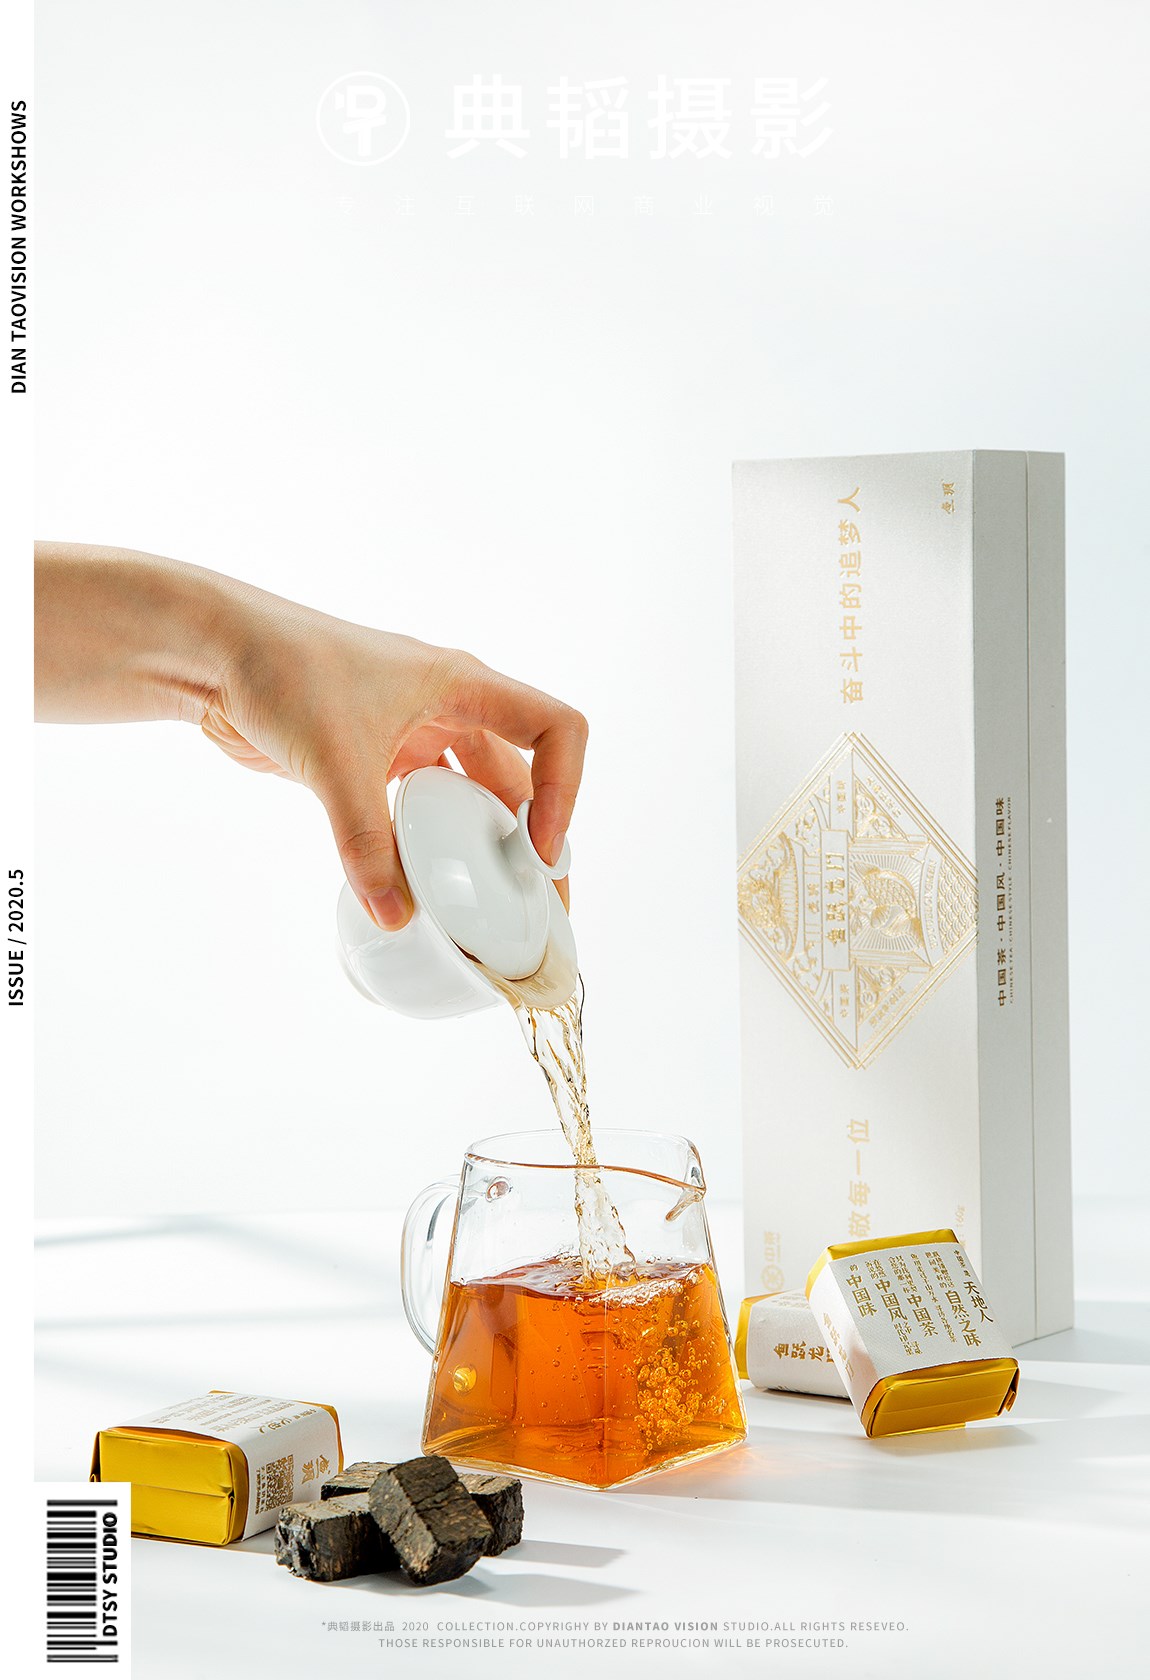 长沙典韬摄影 | 安化黑茶茶叶盒子创意拍摄